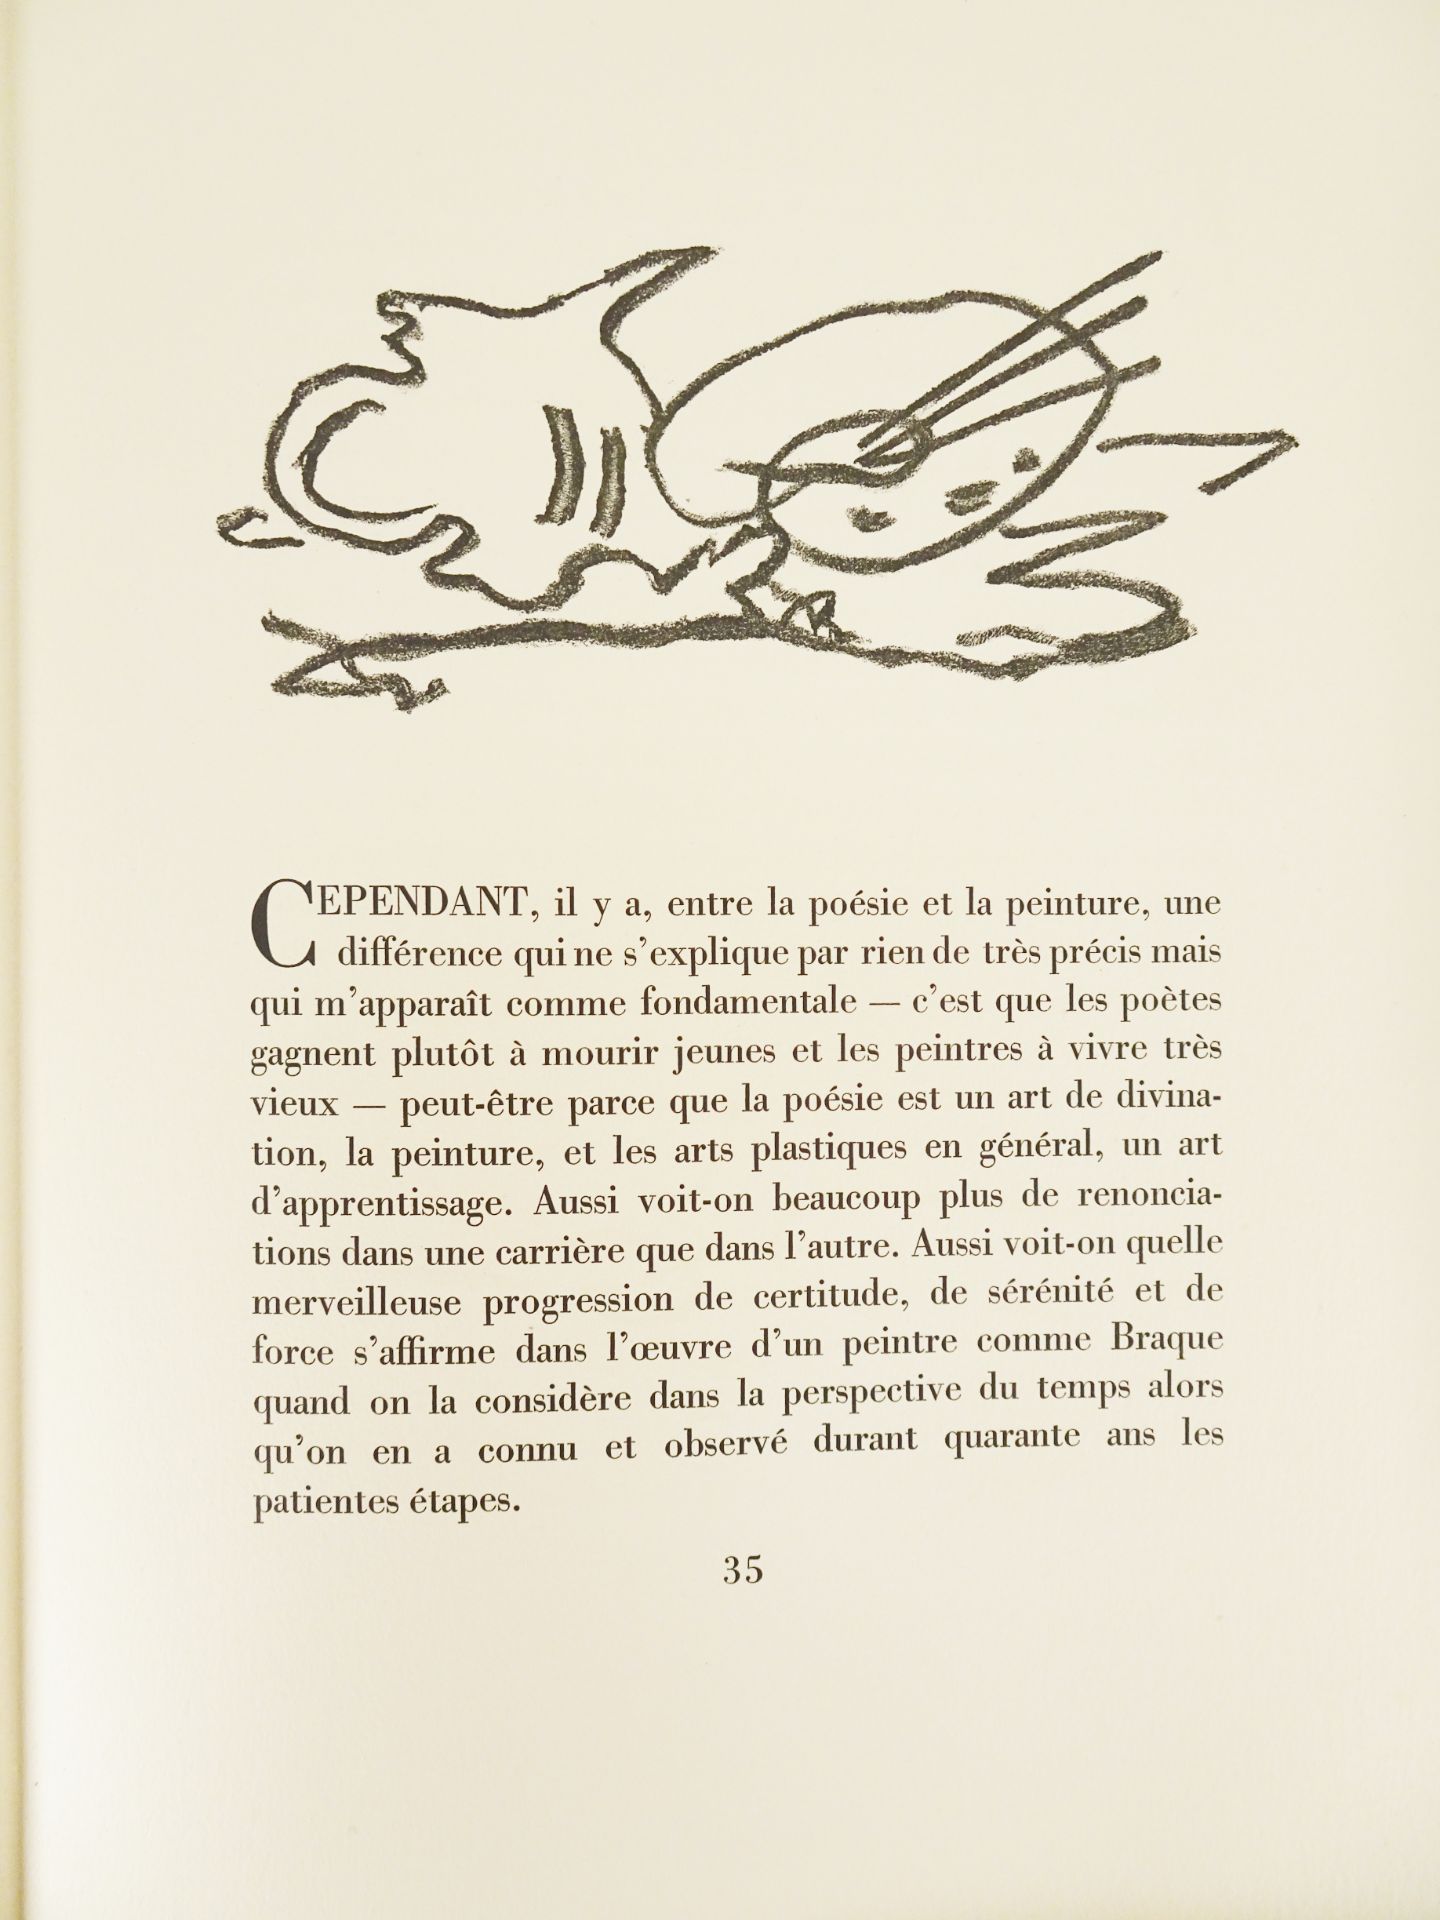 |Art| Braque George & REVERDY Pierre, "Une Aventure méthodique" - signé par l'artiste, 1950 - Image 9 of 17